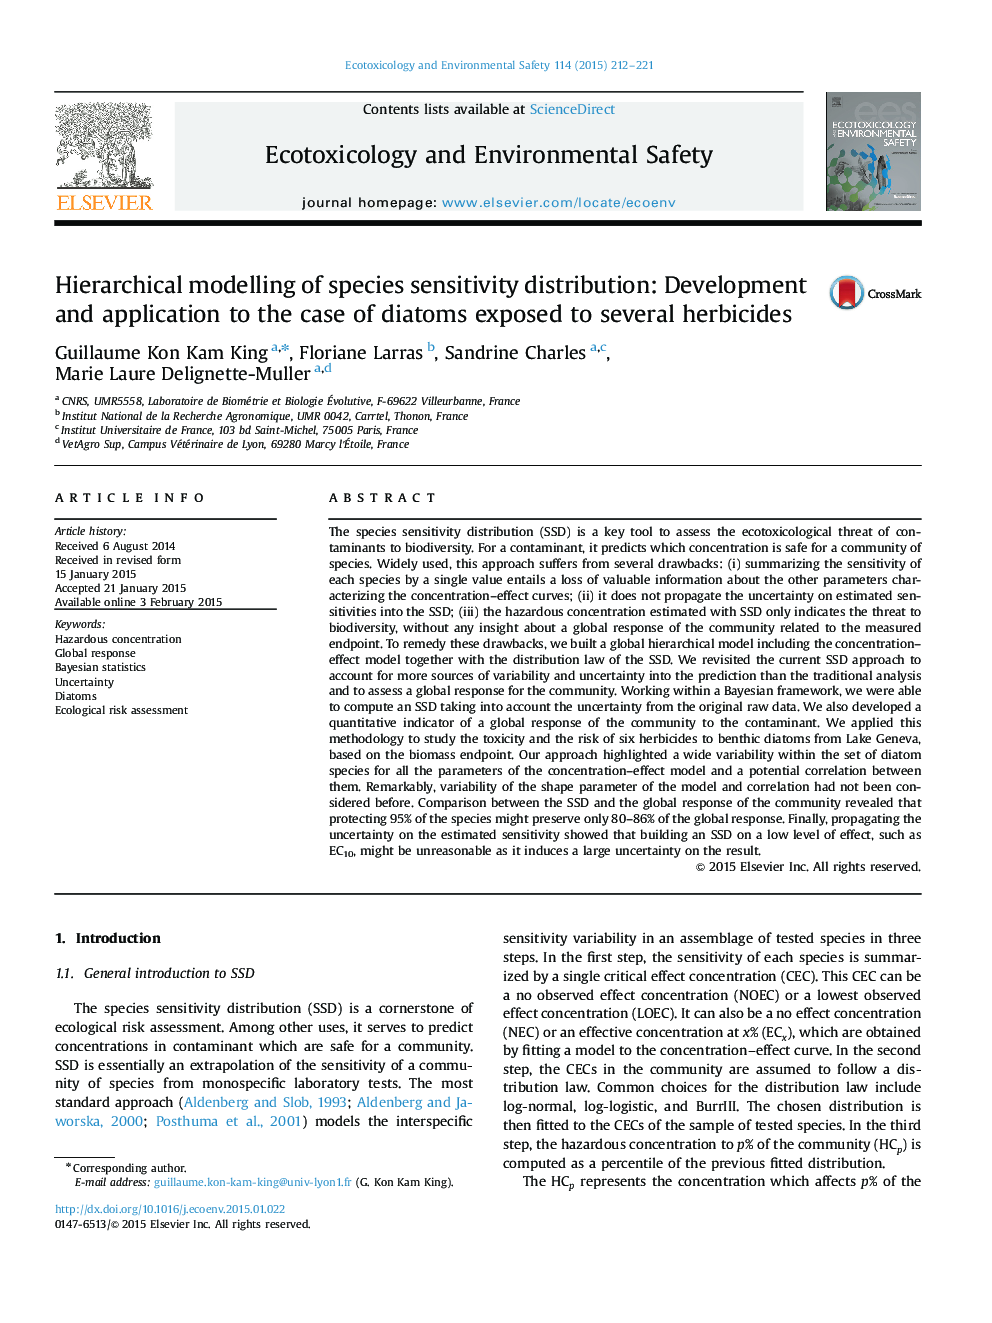 مدلسازی سلسله مراتبی توزیع حساسیت گونه: توسعه و کاربرد در مورد دیاتومهای موجود در معرض چند علف کش 